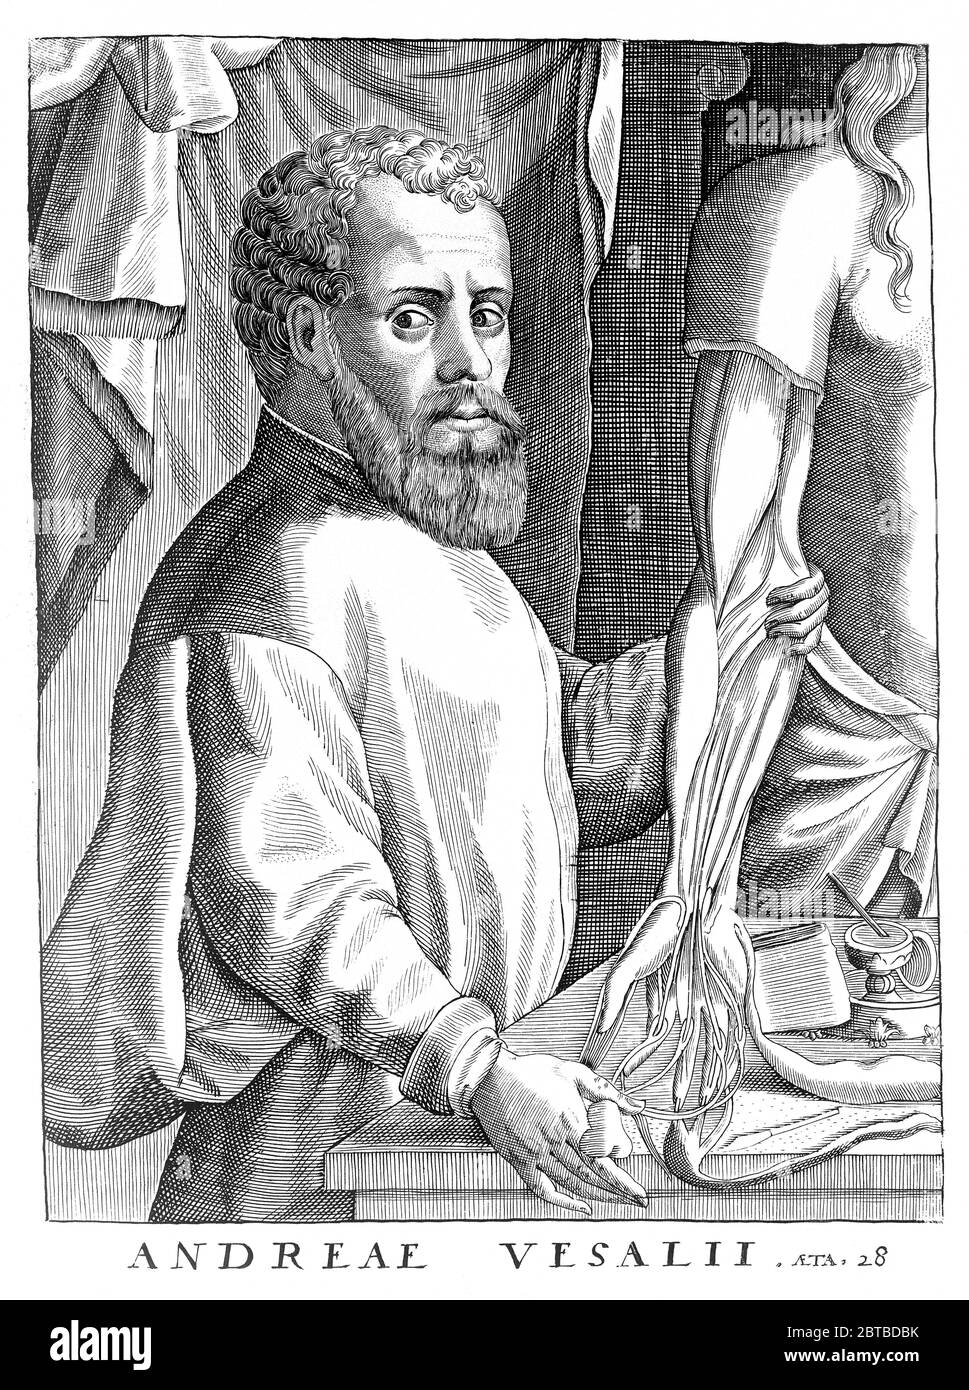 1542 , BELGIO :ANDREAS VESALIUS (1514 - 1564), anatomista fiammingo, alias Andrea VESALIO Andreas van Wesel . Autor di De Humani Corporis Fabrica Libri Septem (sul tessuto del corpo umano). Acquaforte verticale , di 28 anni . - ANATOMIA - ANATOMIA - ANATOMISTA - ANATOMISTA - scienziato - ritratto - DOTTORE - MEDICO - MEDICINA - medicina - SCIENZA - SCIENZA - DOTTORE - MEDICO - illustrazione - illustrazione - incisione - incisione - barba - barba - BELGIO --- Archivio GBB Foto Stock